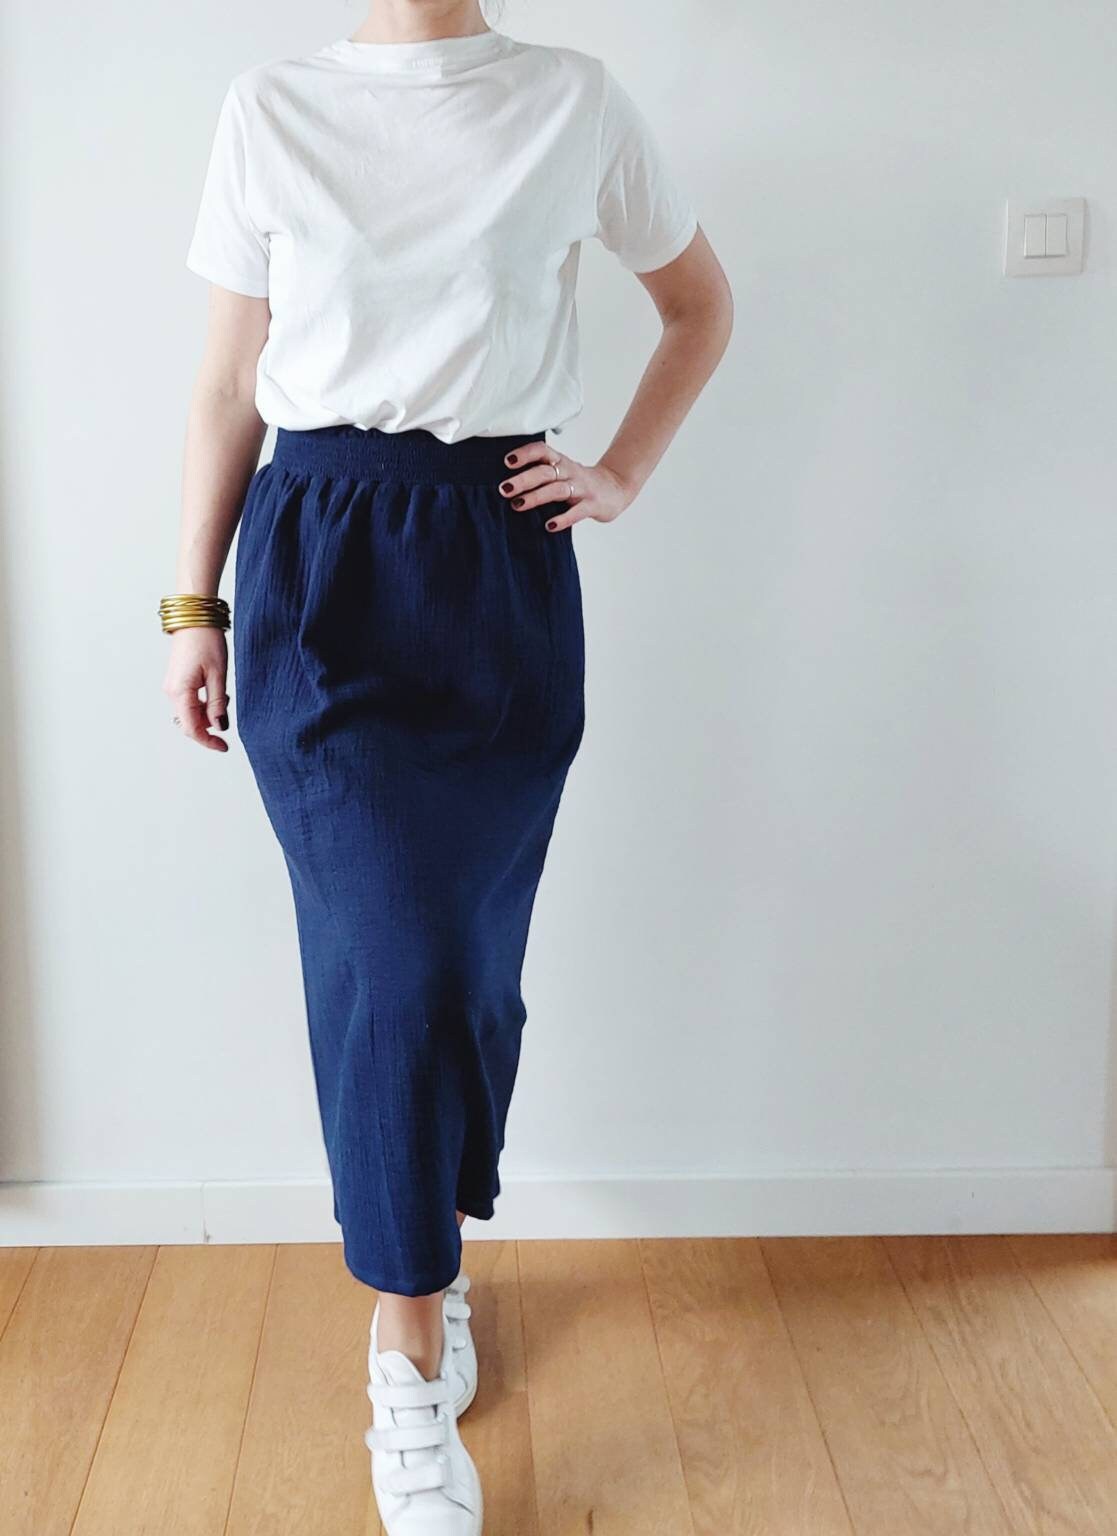 Women's Long Skirt Cotton Gauze Navy Blue Elastic - Etsy